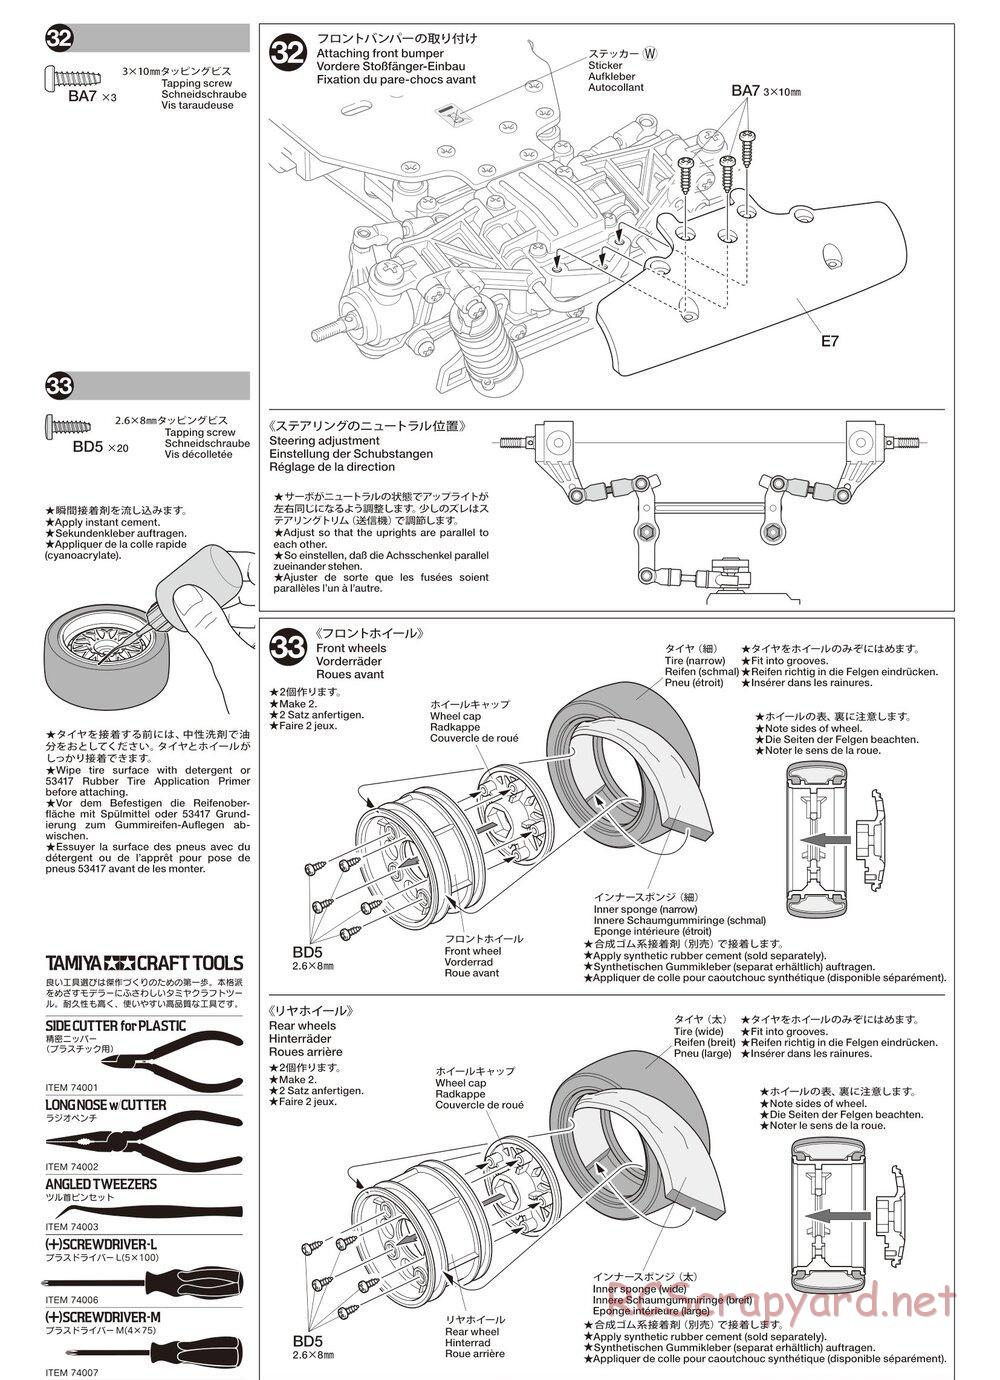 Tamiya - TA02SW Chassis - Manual - Page 16